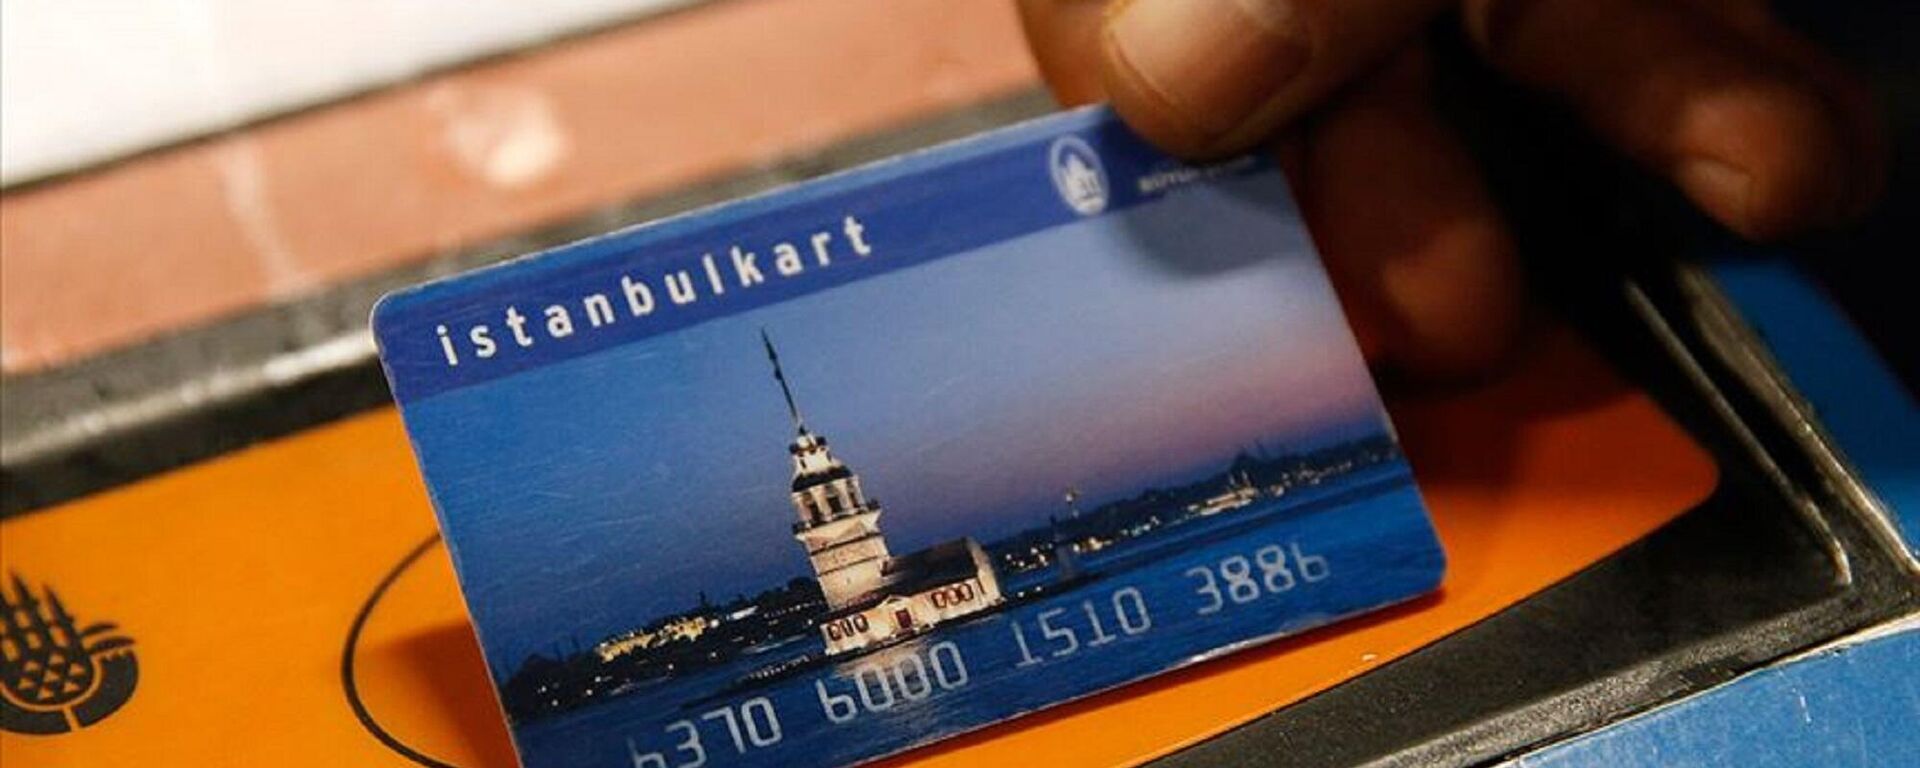 İstanbulKart  - Sputnik Türkiye, 1920, 18.07.2022